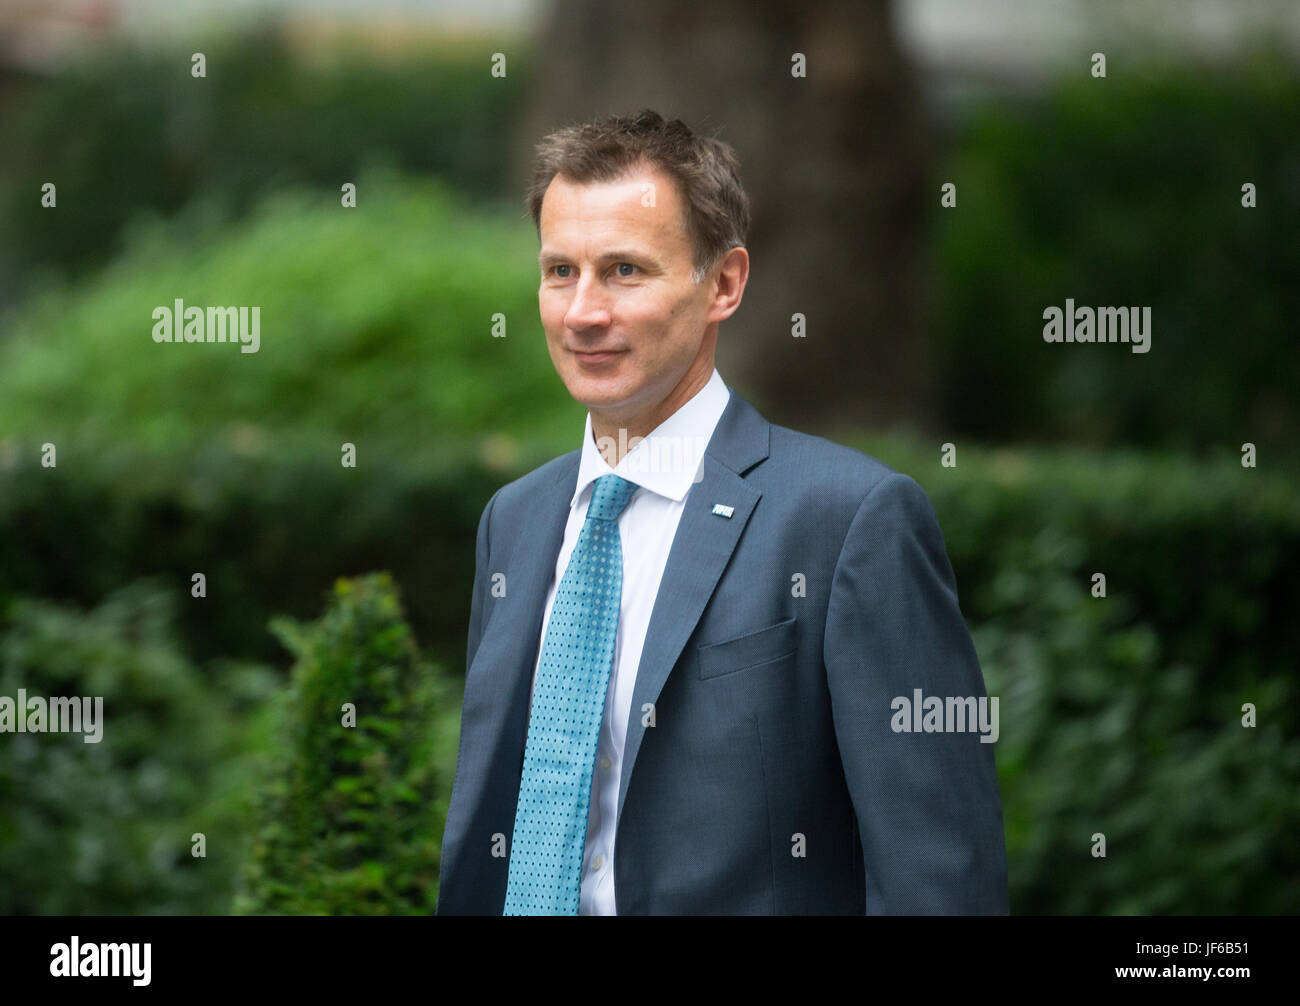 Gesundheitsminister, Jeremy Hunt, kommt in der Downing Street für eine Kabinettssitzung Stockfoto